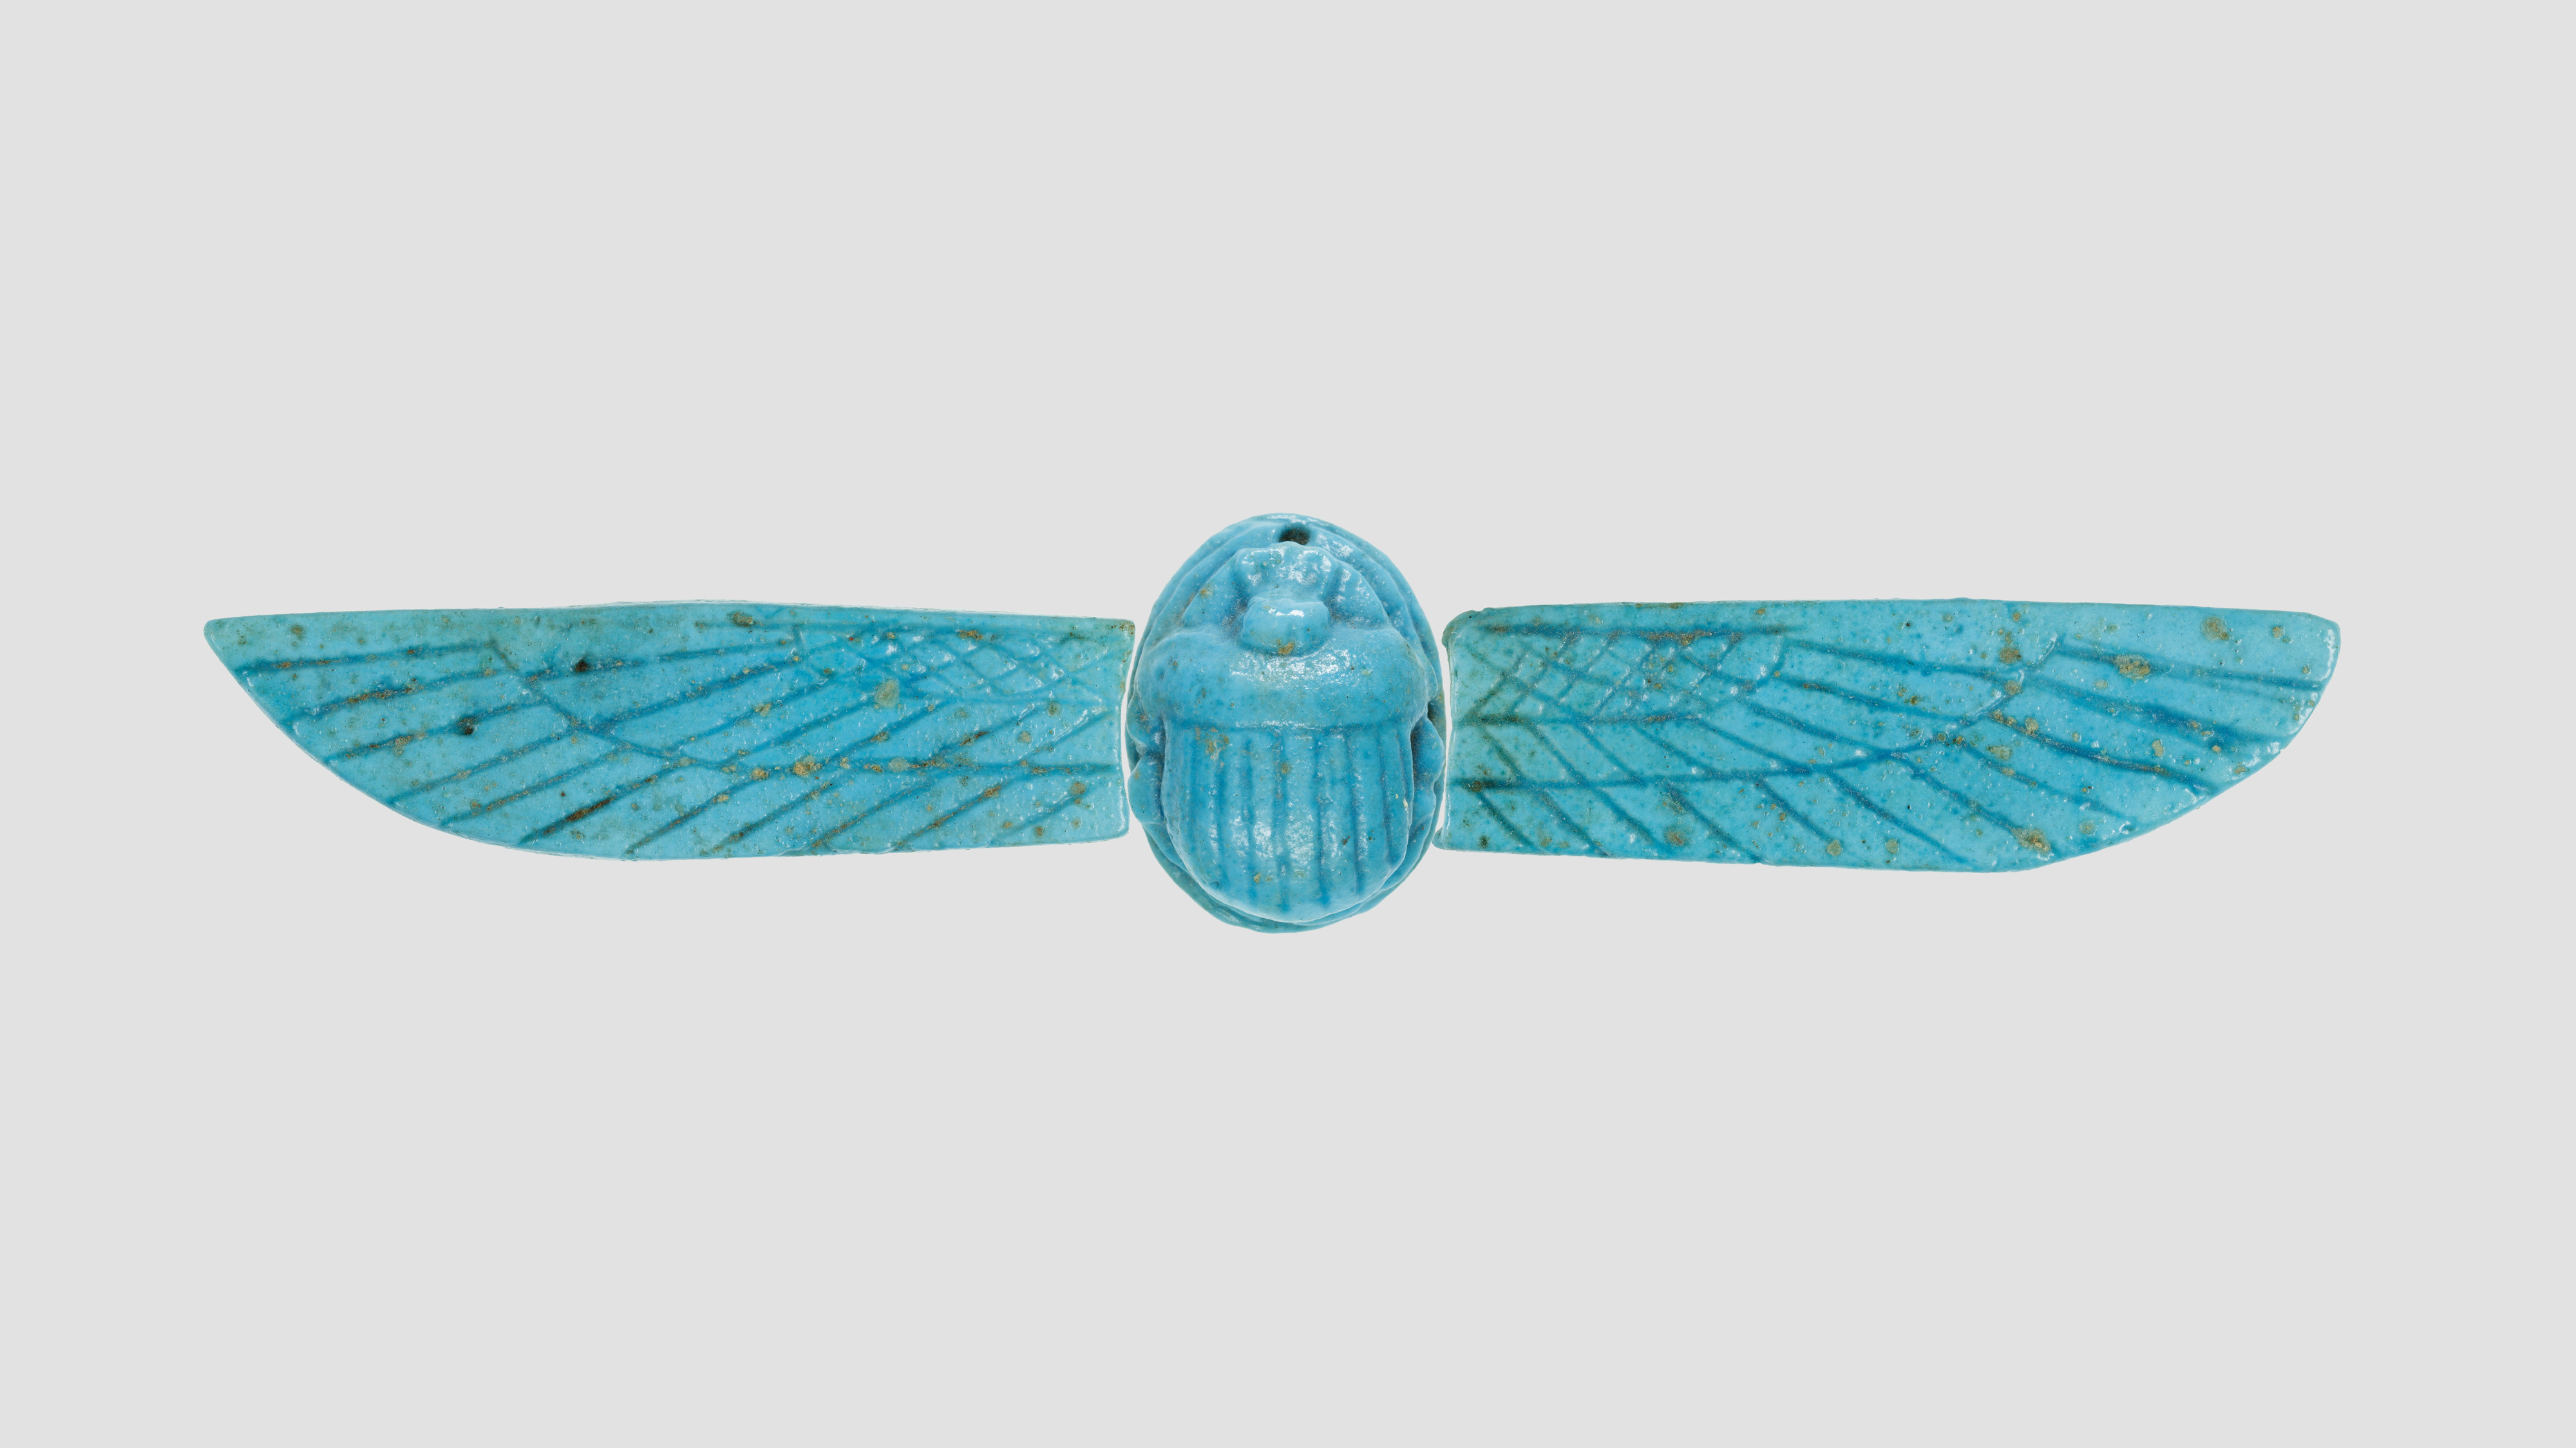 egyptian scarab amulet